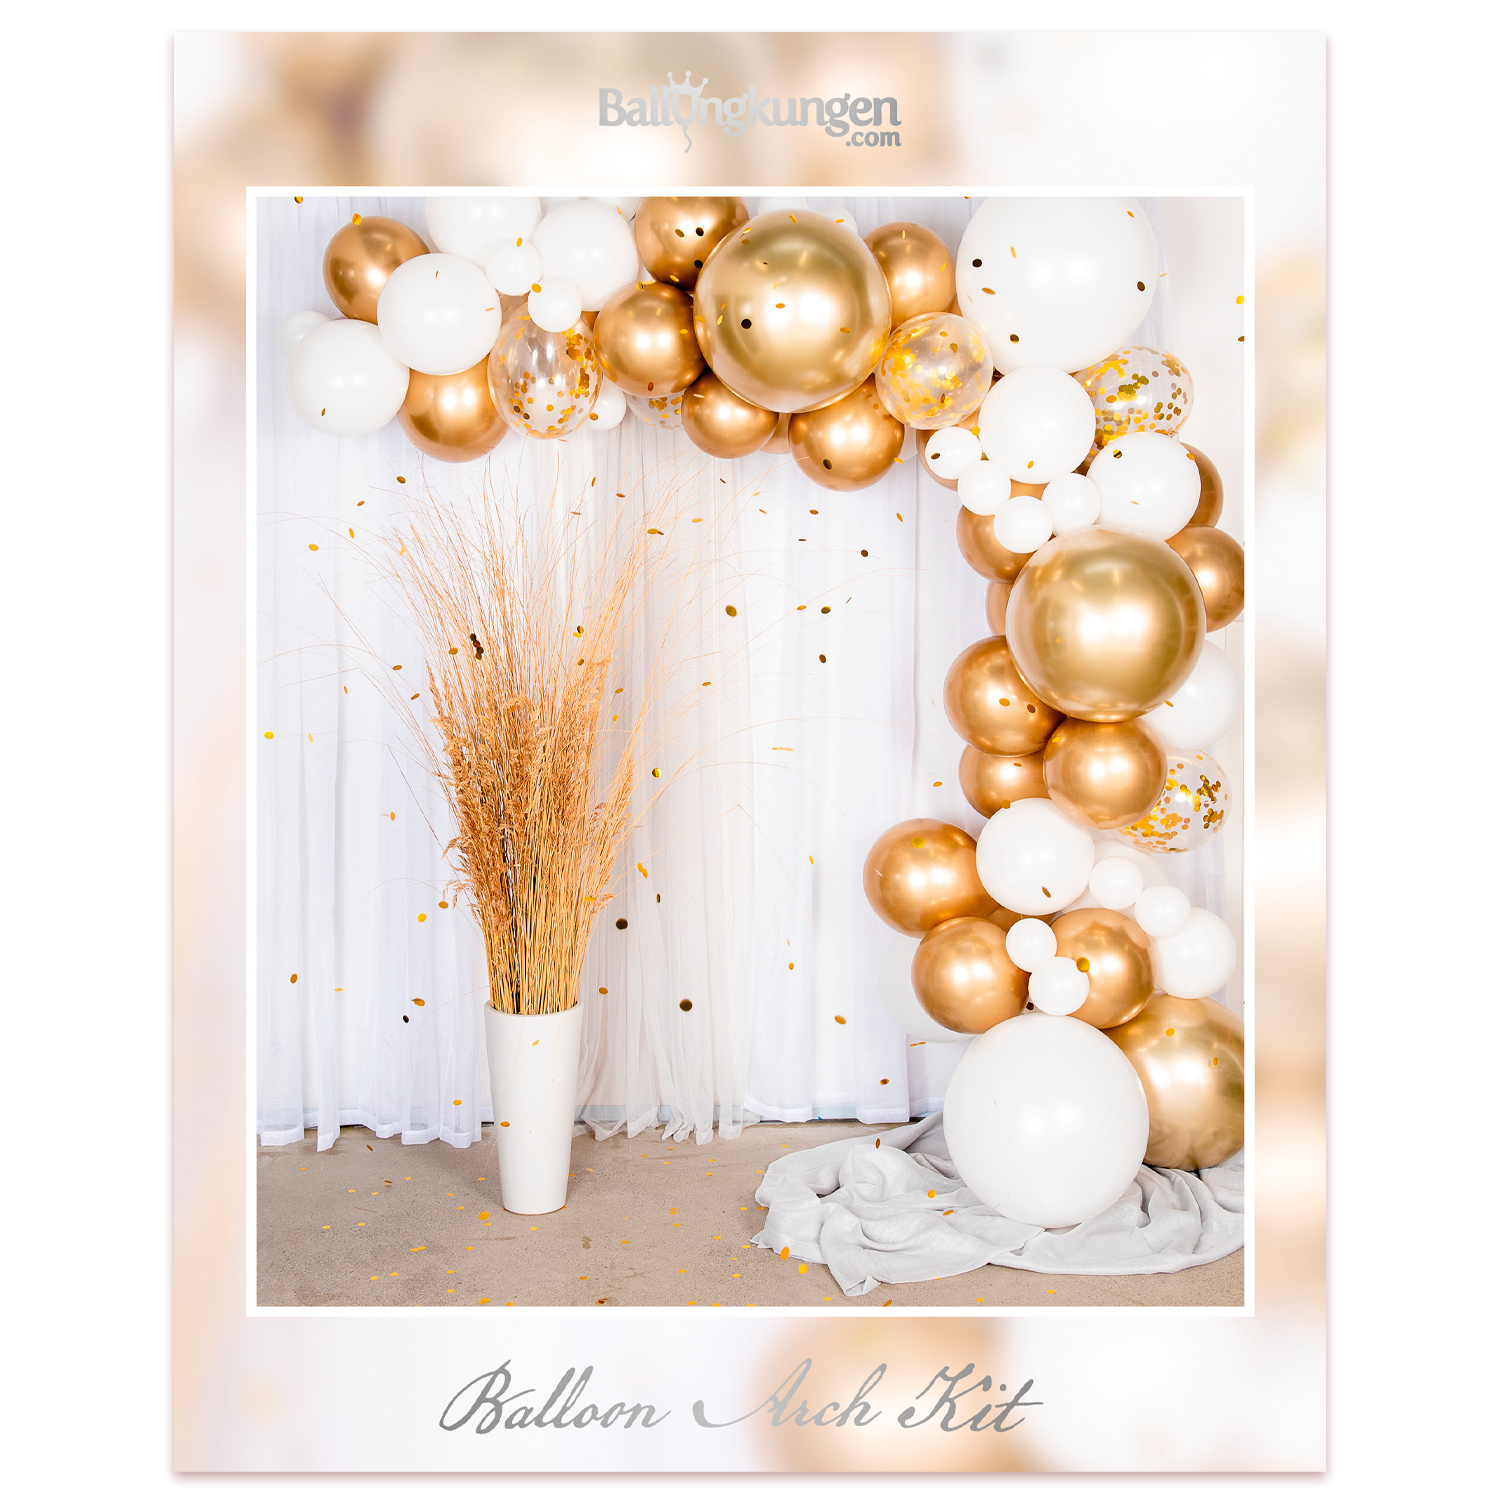 Balloon Arch Kit - Gold/Chrome